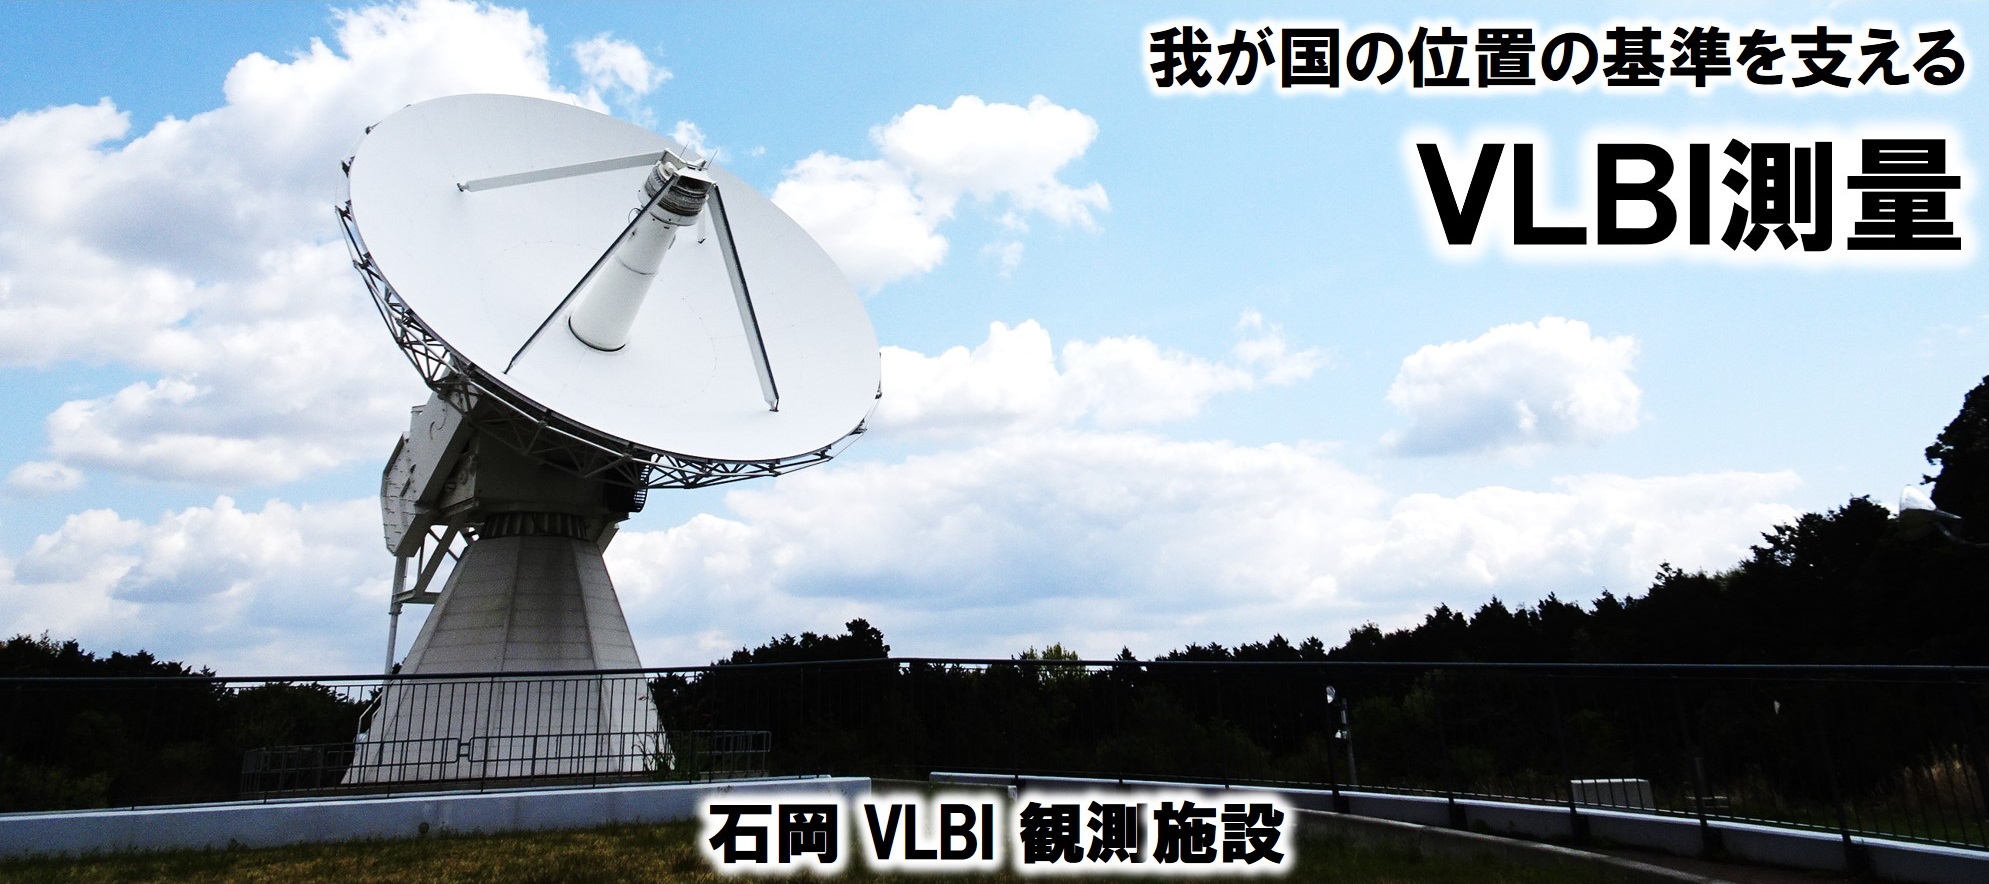 大きなパラボラアンテナが写っています。これは日本の位置の基準を支えるVLBIアンテナで、茨城県石岡市にあります。